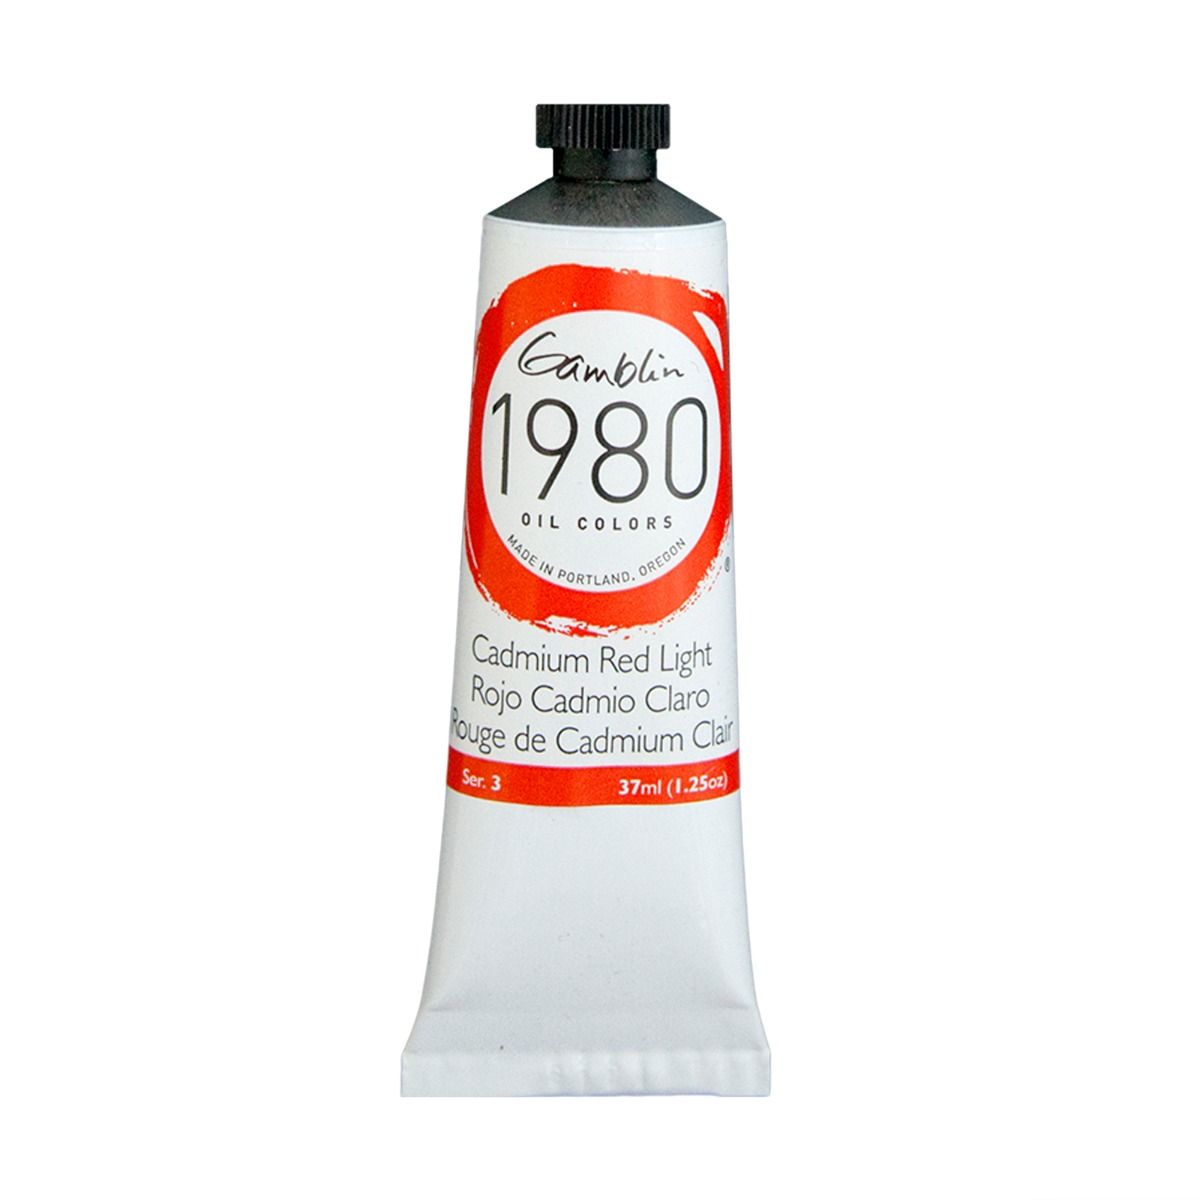 Gamblin 1980 Oils - Cadmium Red Light, 37 ml (1.25oz)